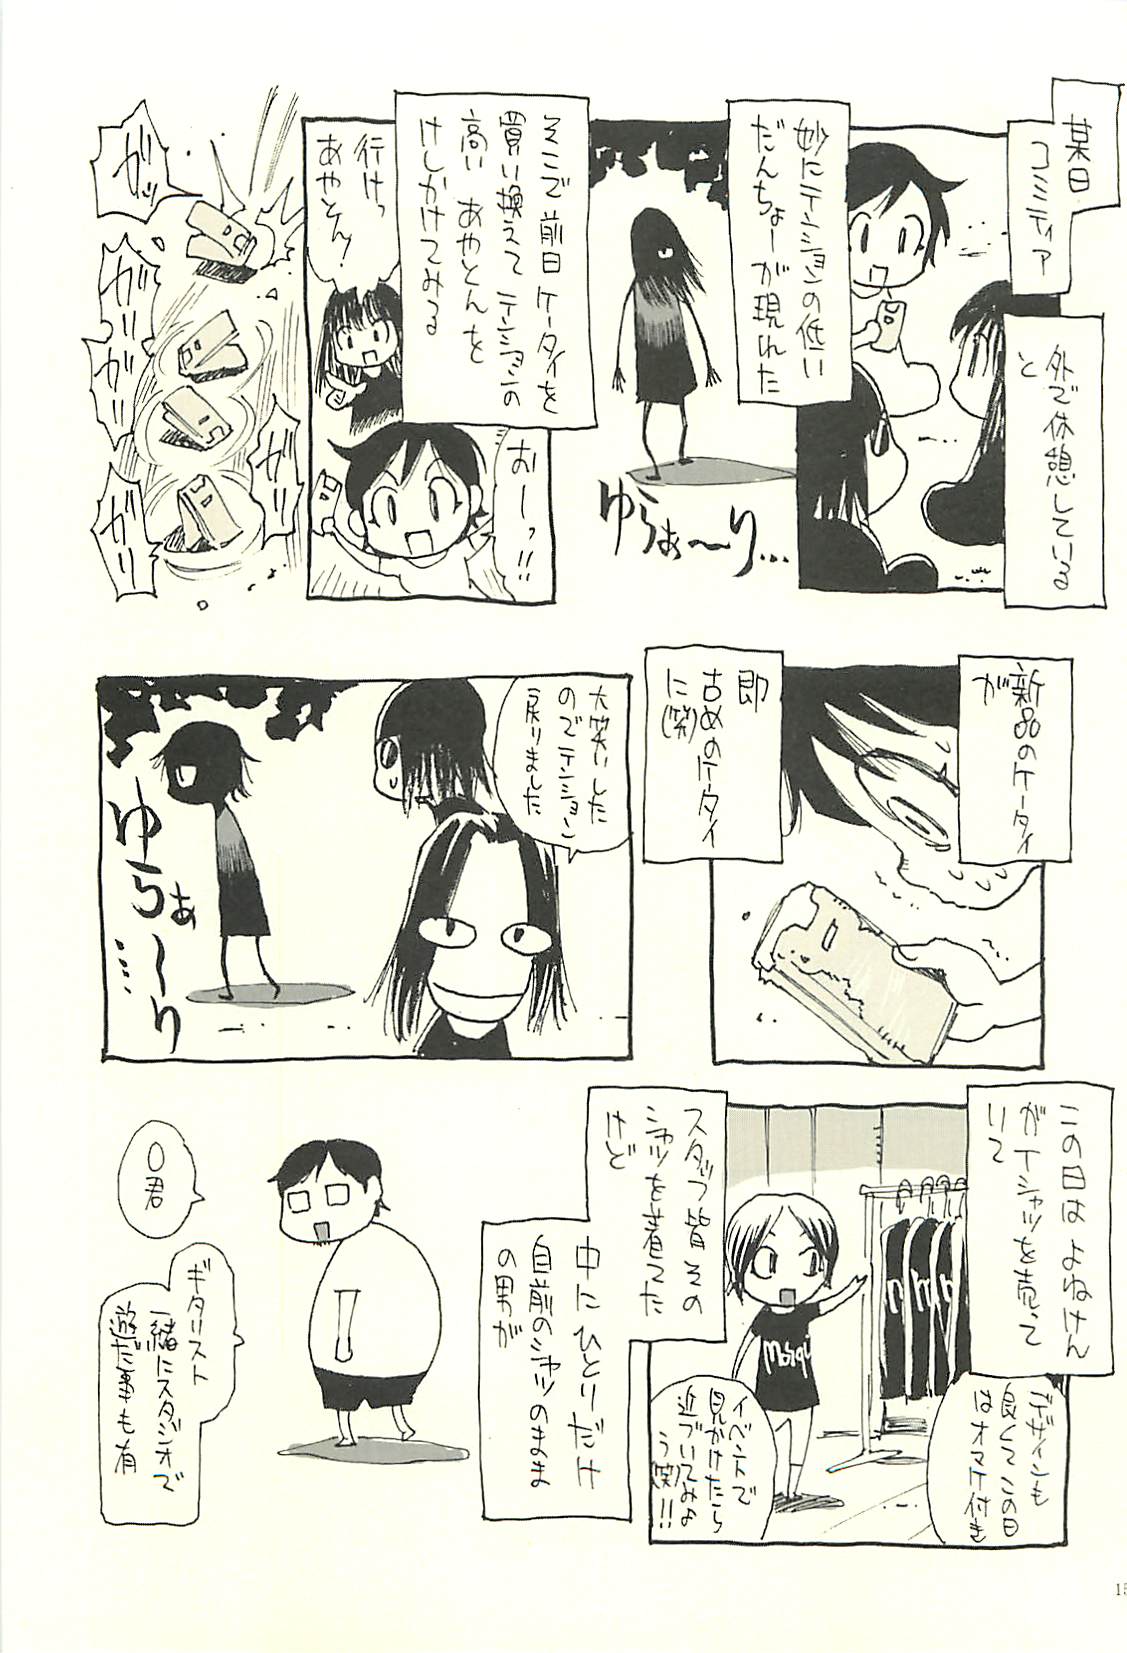 [NOUZUI MAJUTSU, NO-NO'S (Kawara Keisuke,Kanesada Keishi)] Nouzui Kawaraban Hinichijoutekina Nichijou V [脳髄魔術, NO-NO'S (瓦敬助, 兼処敬士)] 脳髄瓦版 非日常的な日常V